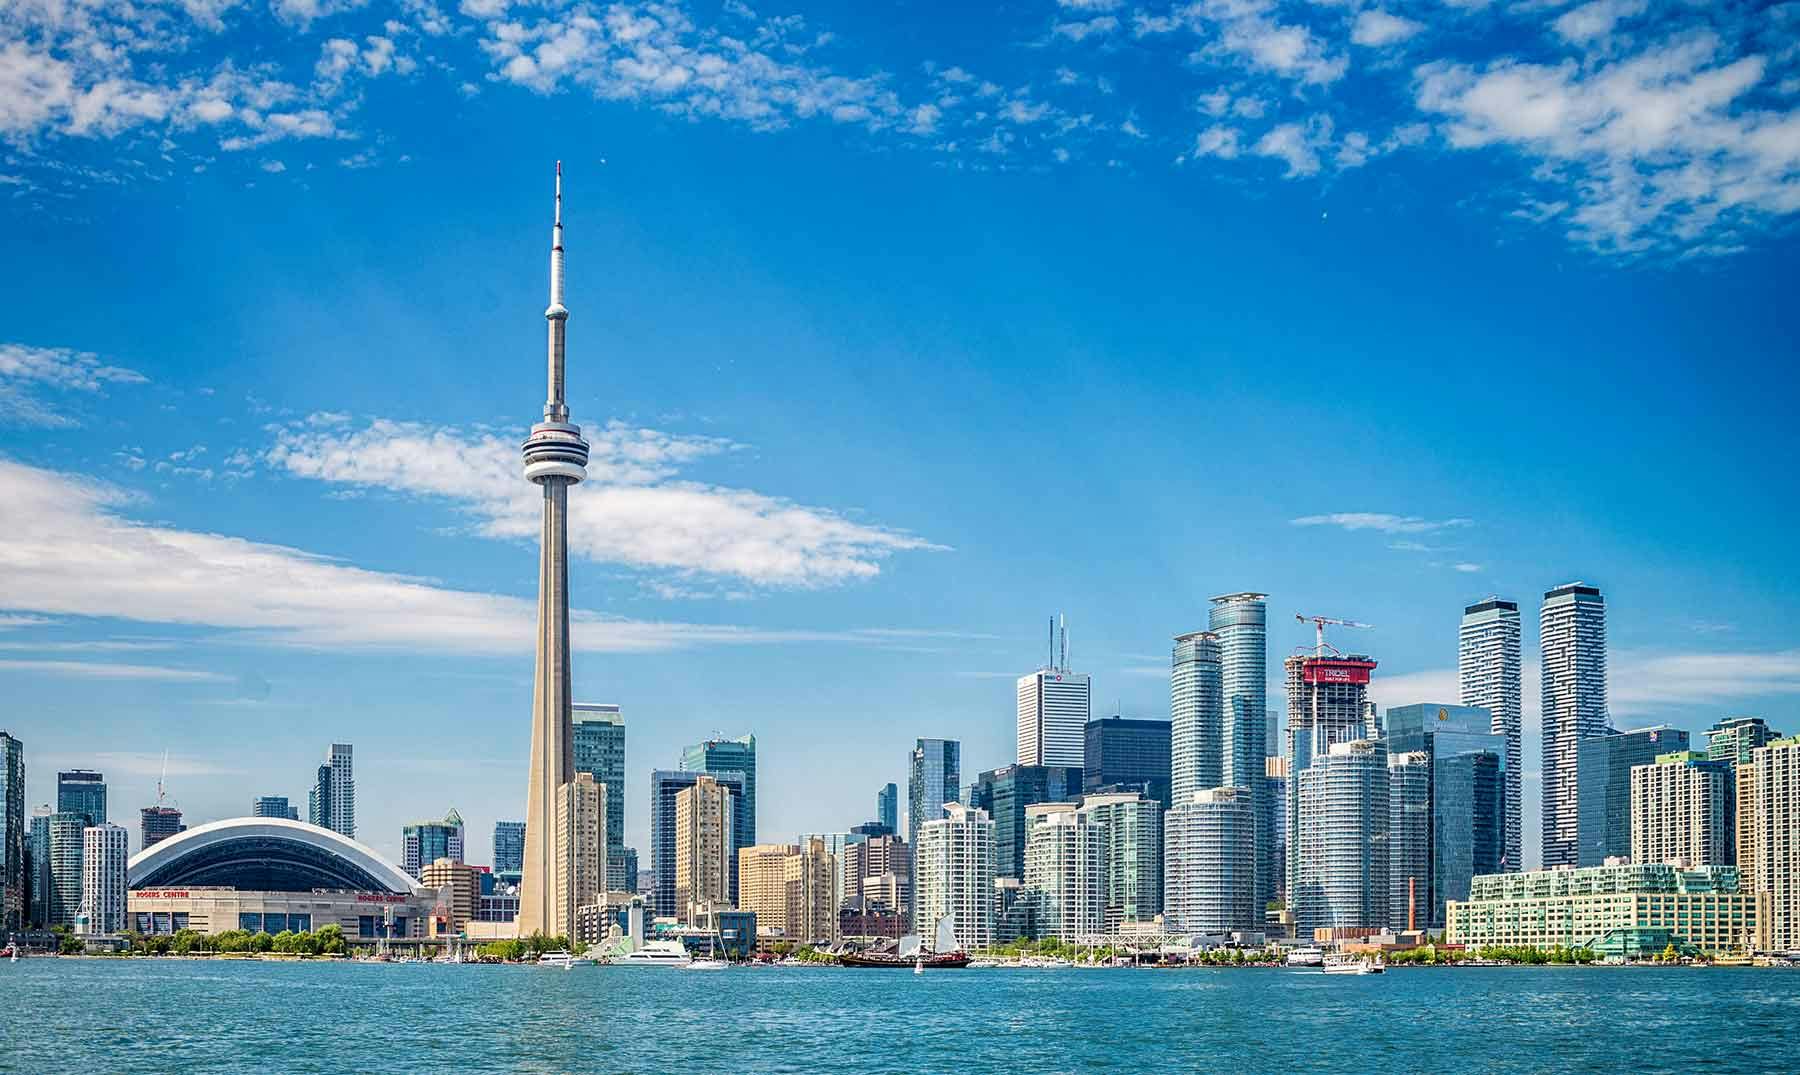 ¿Te gustaría estudiar y trabajar en Toronto?